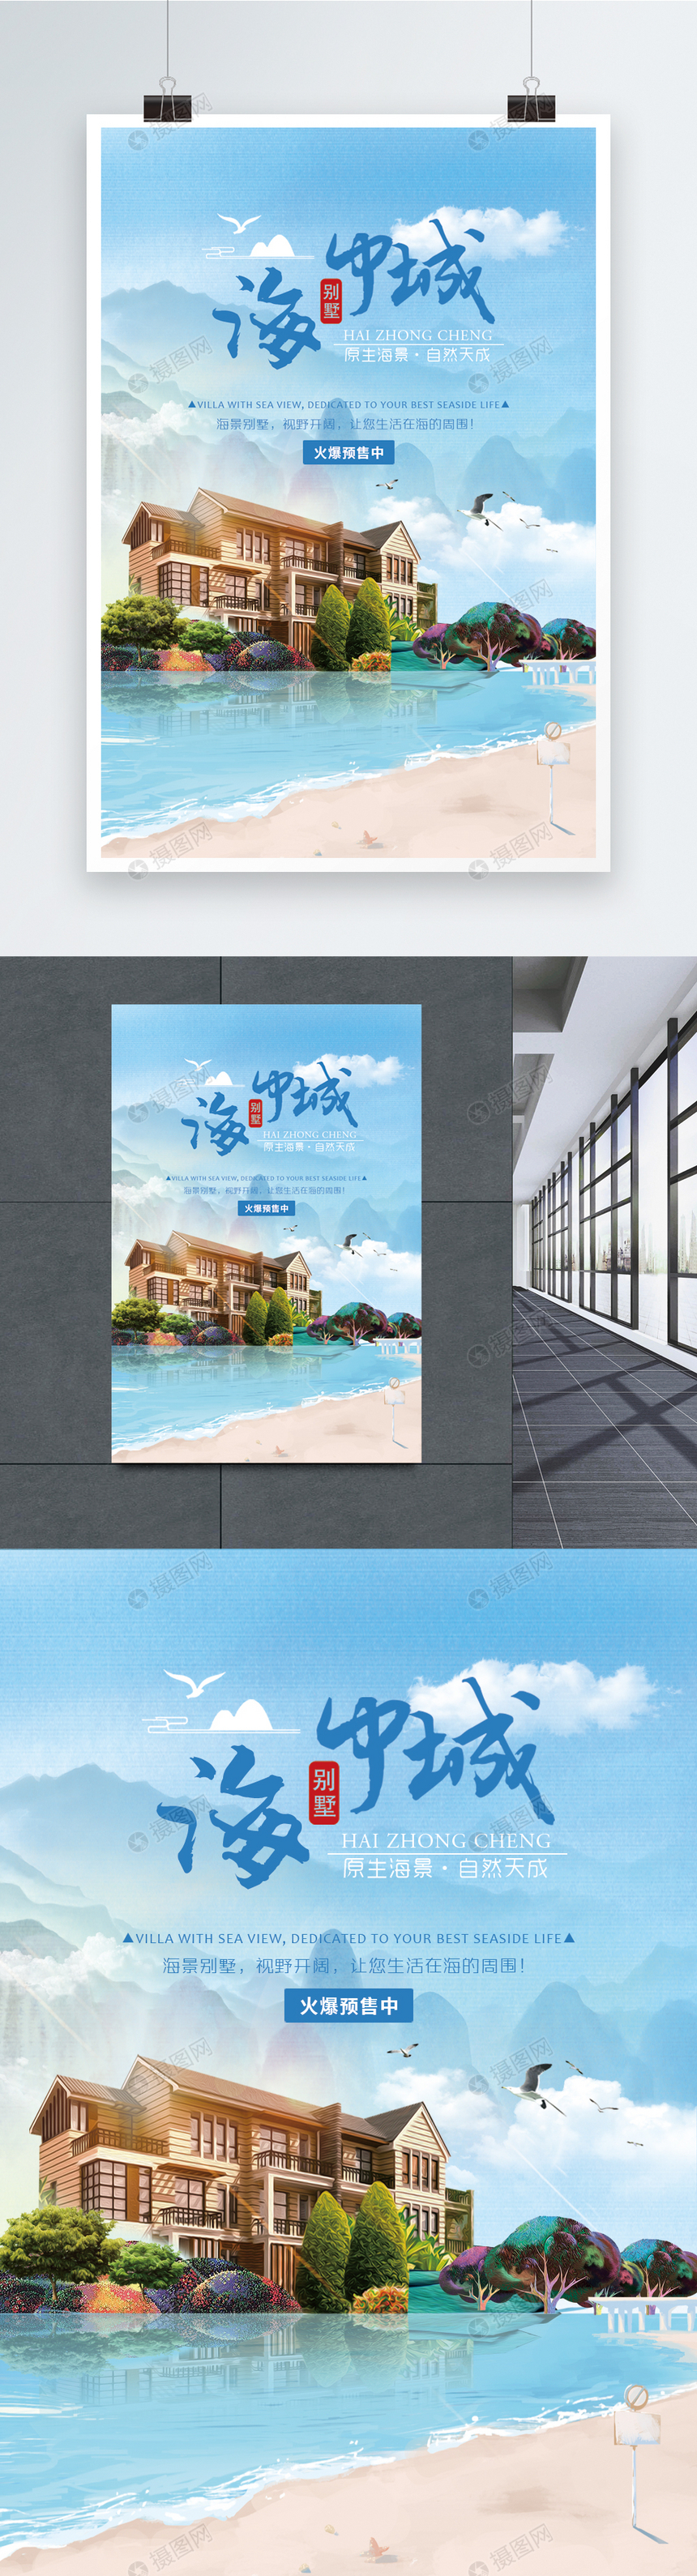 海中城房地产广告海报图片